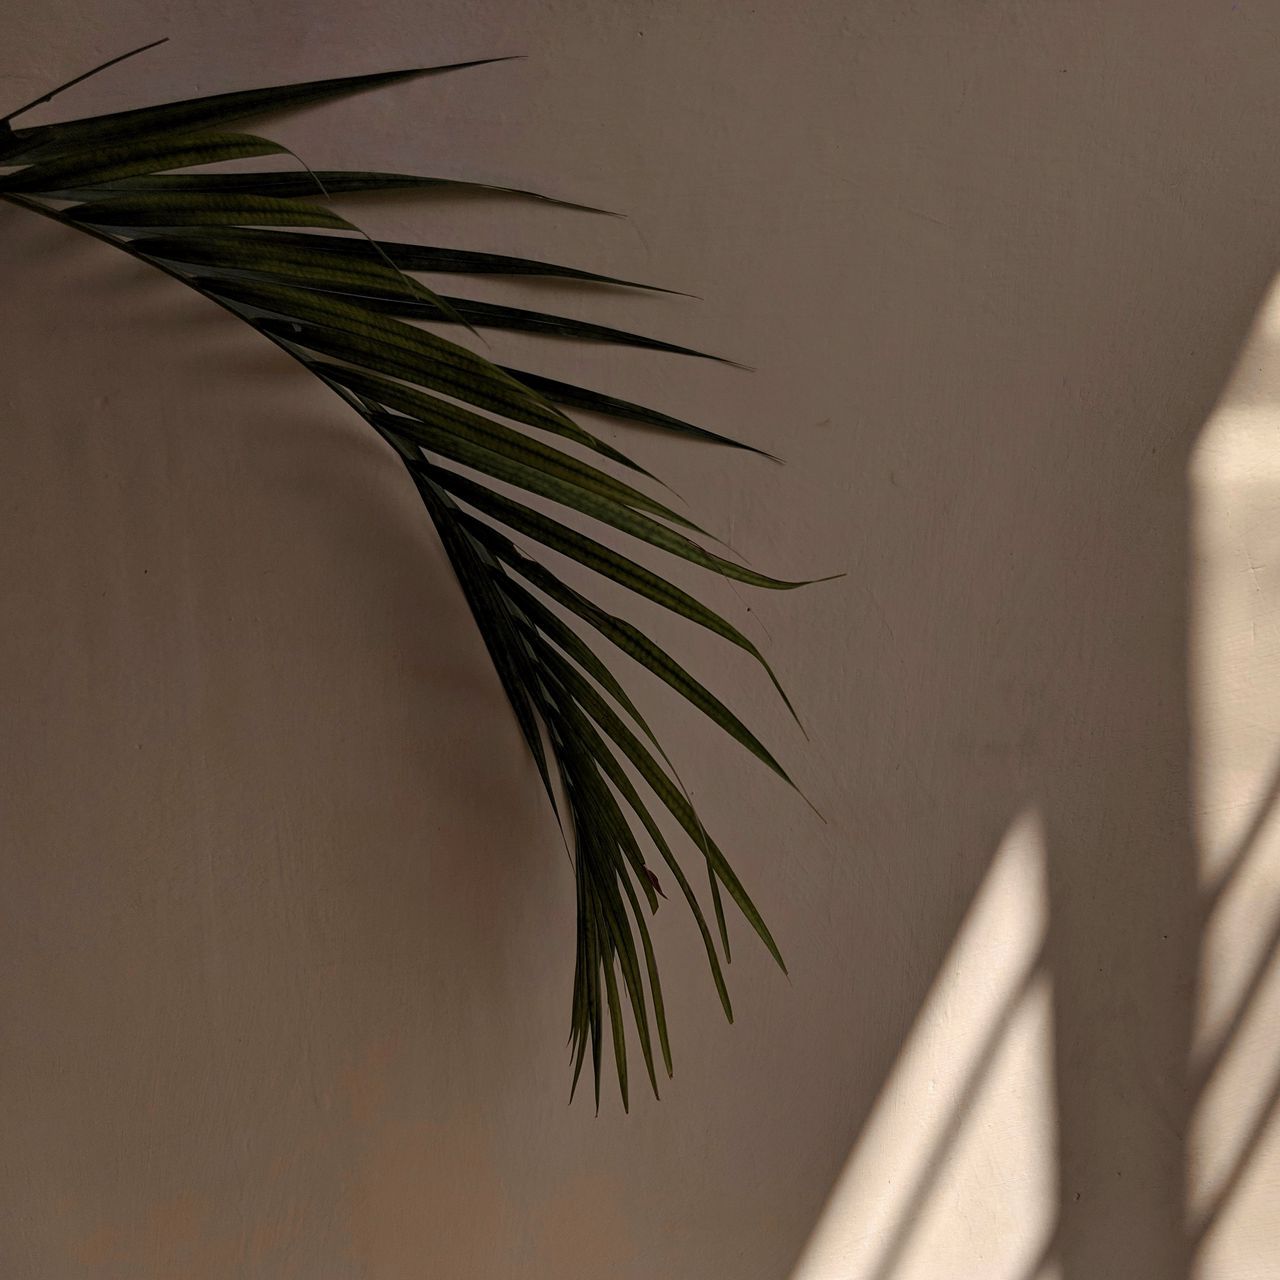 Download wallpaper 1280x1280 palm tree, leaves, wall, minimalism, aesthetics ipad, ipad ipad mini for parallax HD background